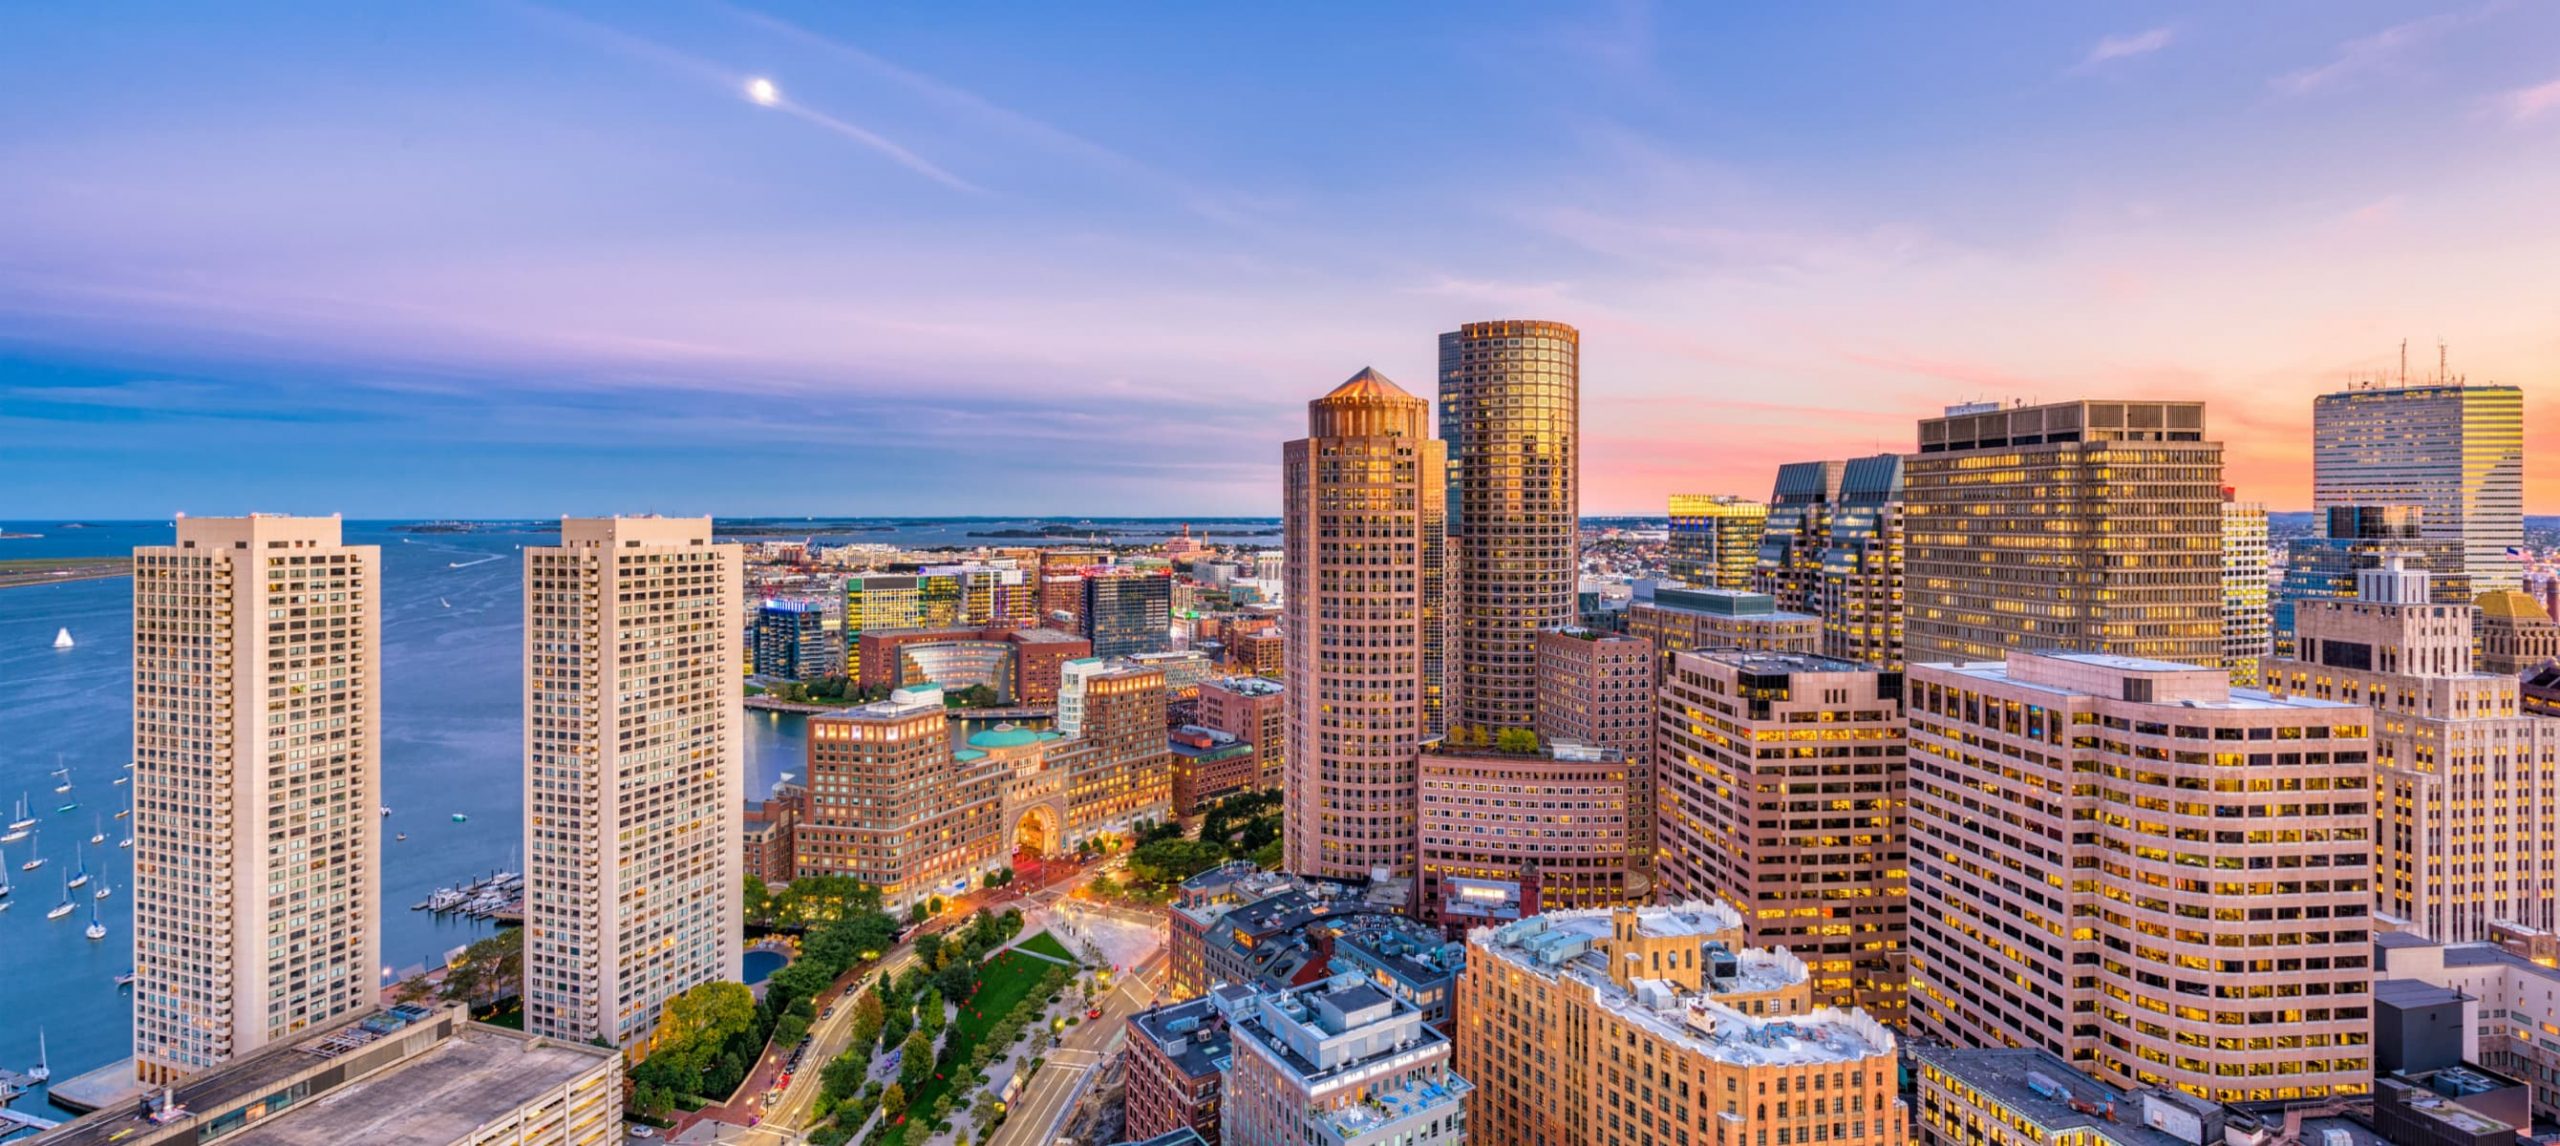 a view of downtown Boston